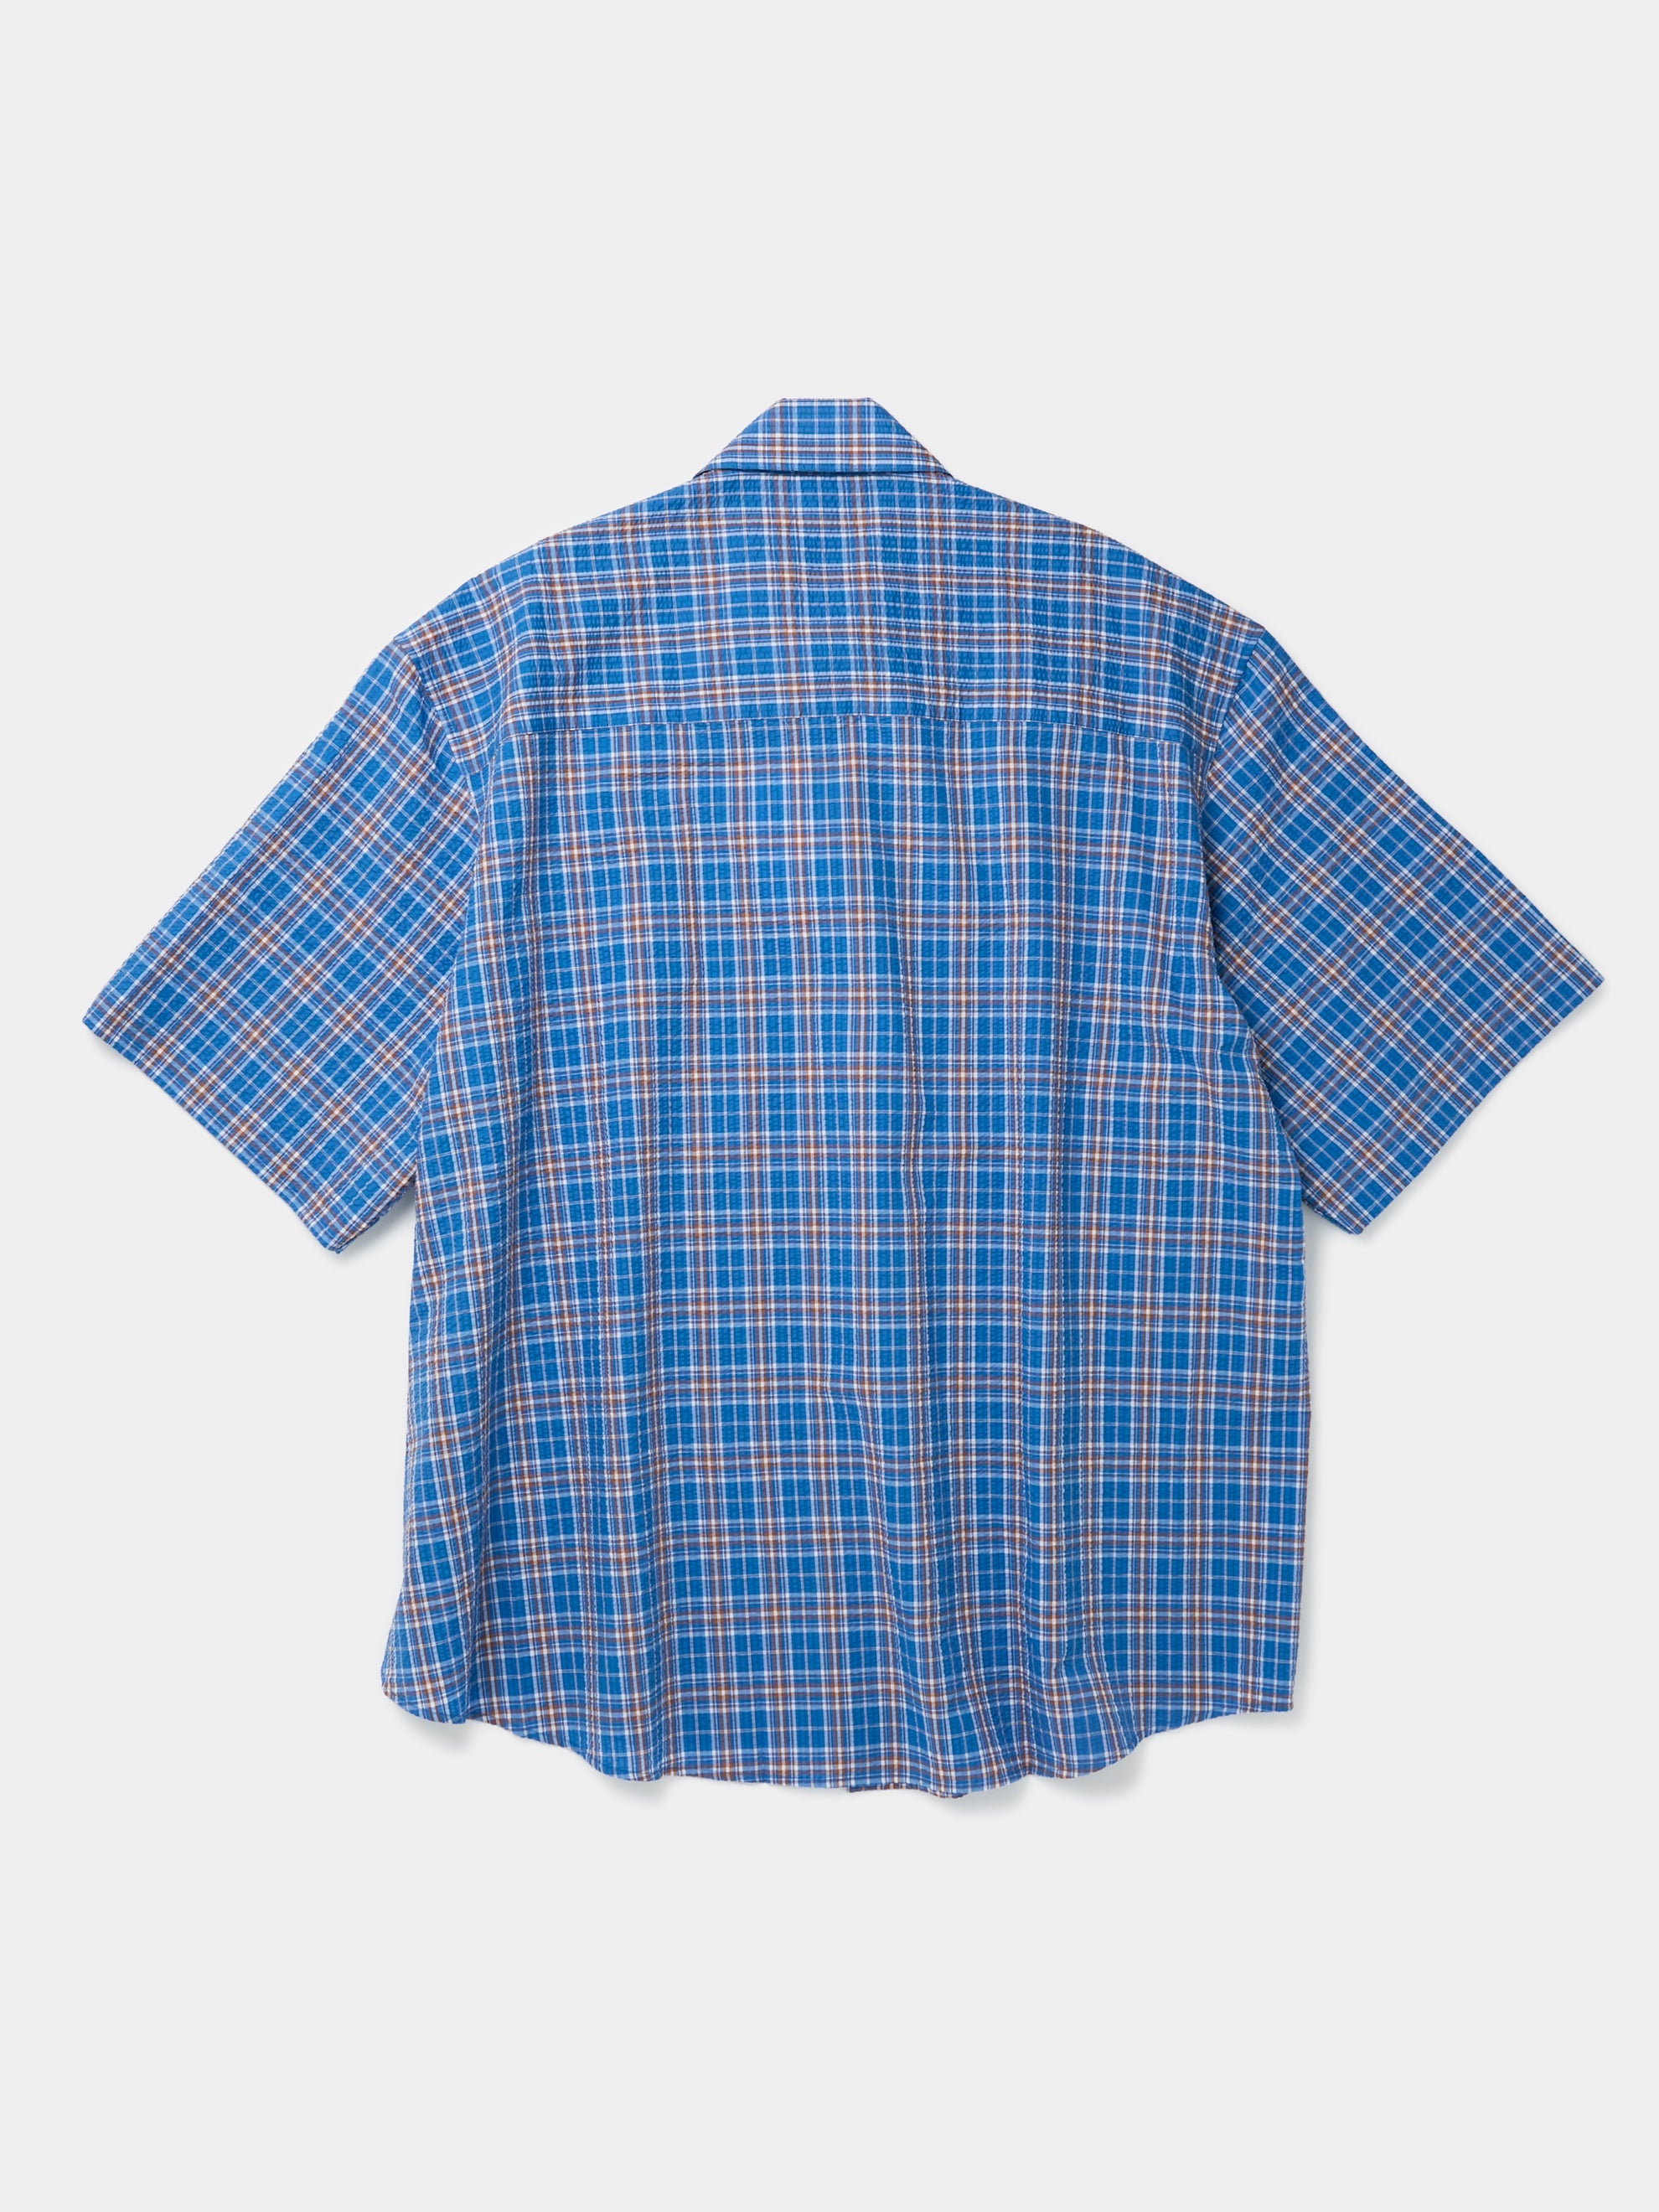 S/S Wrap Shirt (Blue)